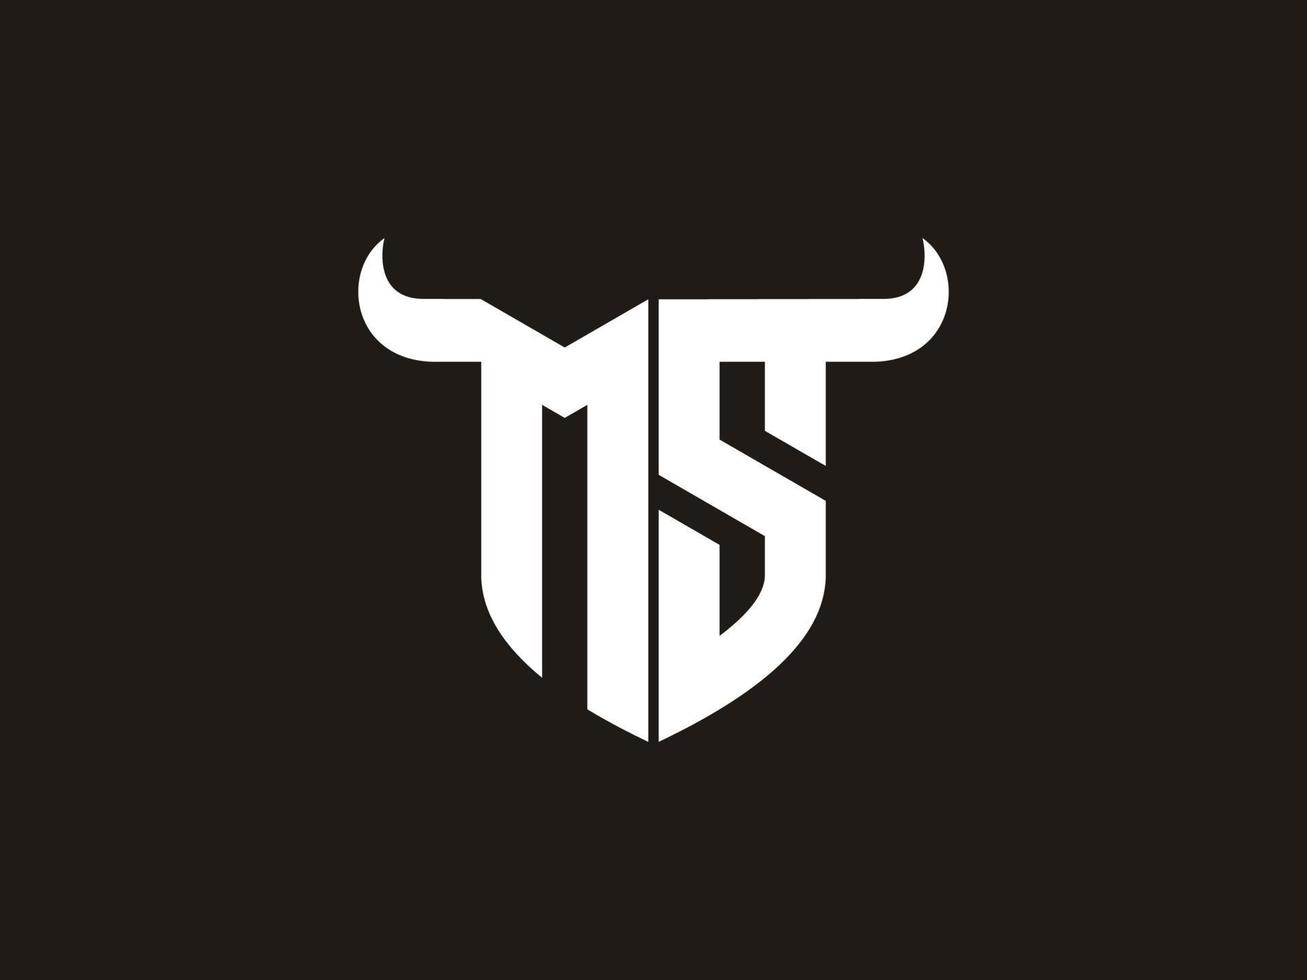 création initiale du logo ms bull. vecteur